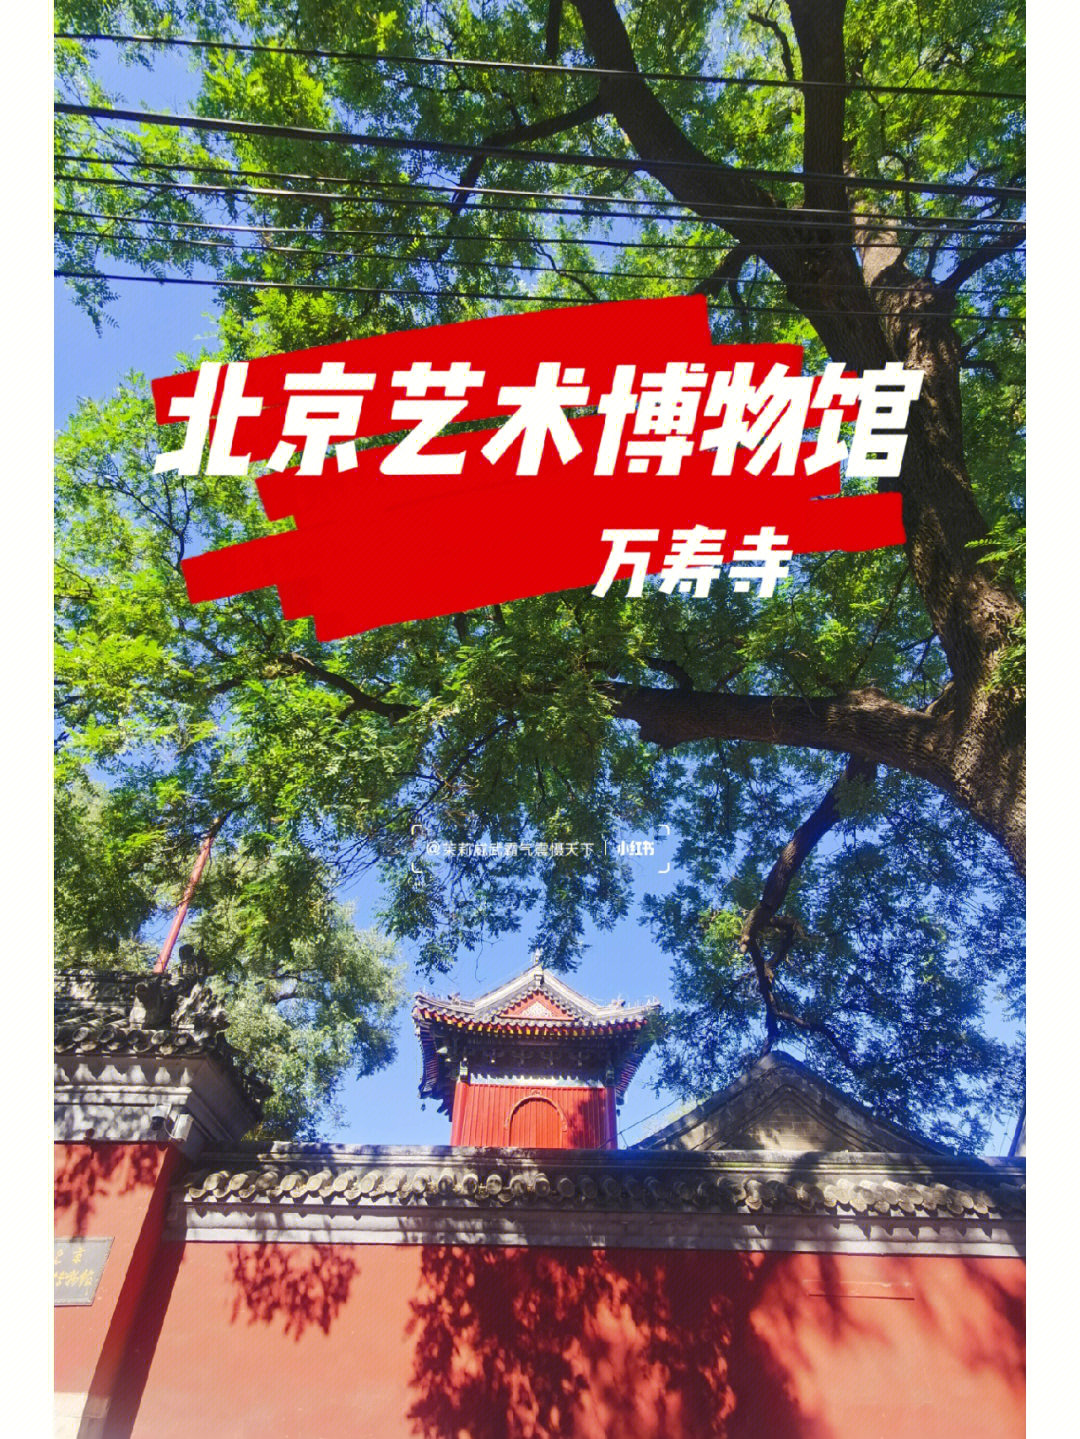 万寿寺北京艺术博物馆打卡盖章173